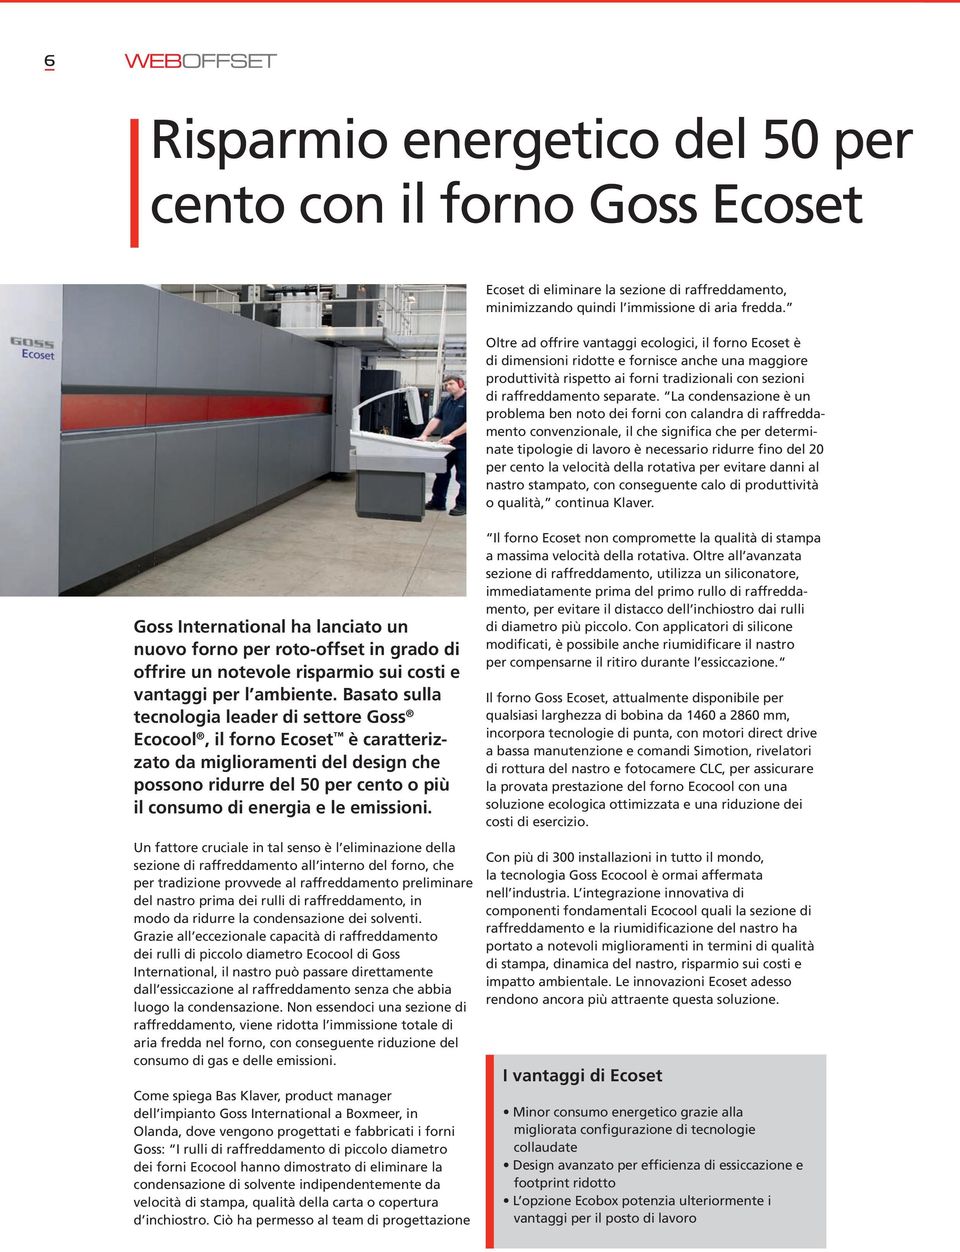 Basato sulla tecnologia leader di settore Goss Ecocool, il forno Ecoset è caratterizzato da miglioramenti del design che possono ridurre del 50 per cento o più il consumo di energia e le emissioni.